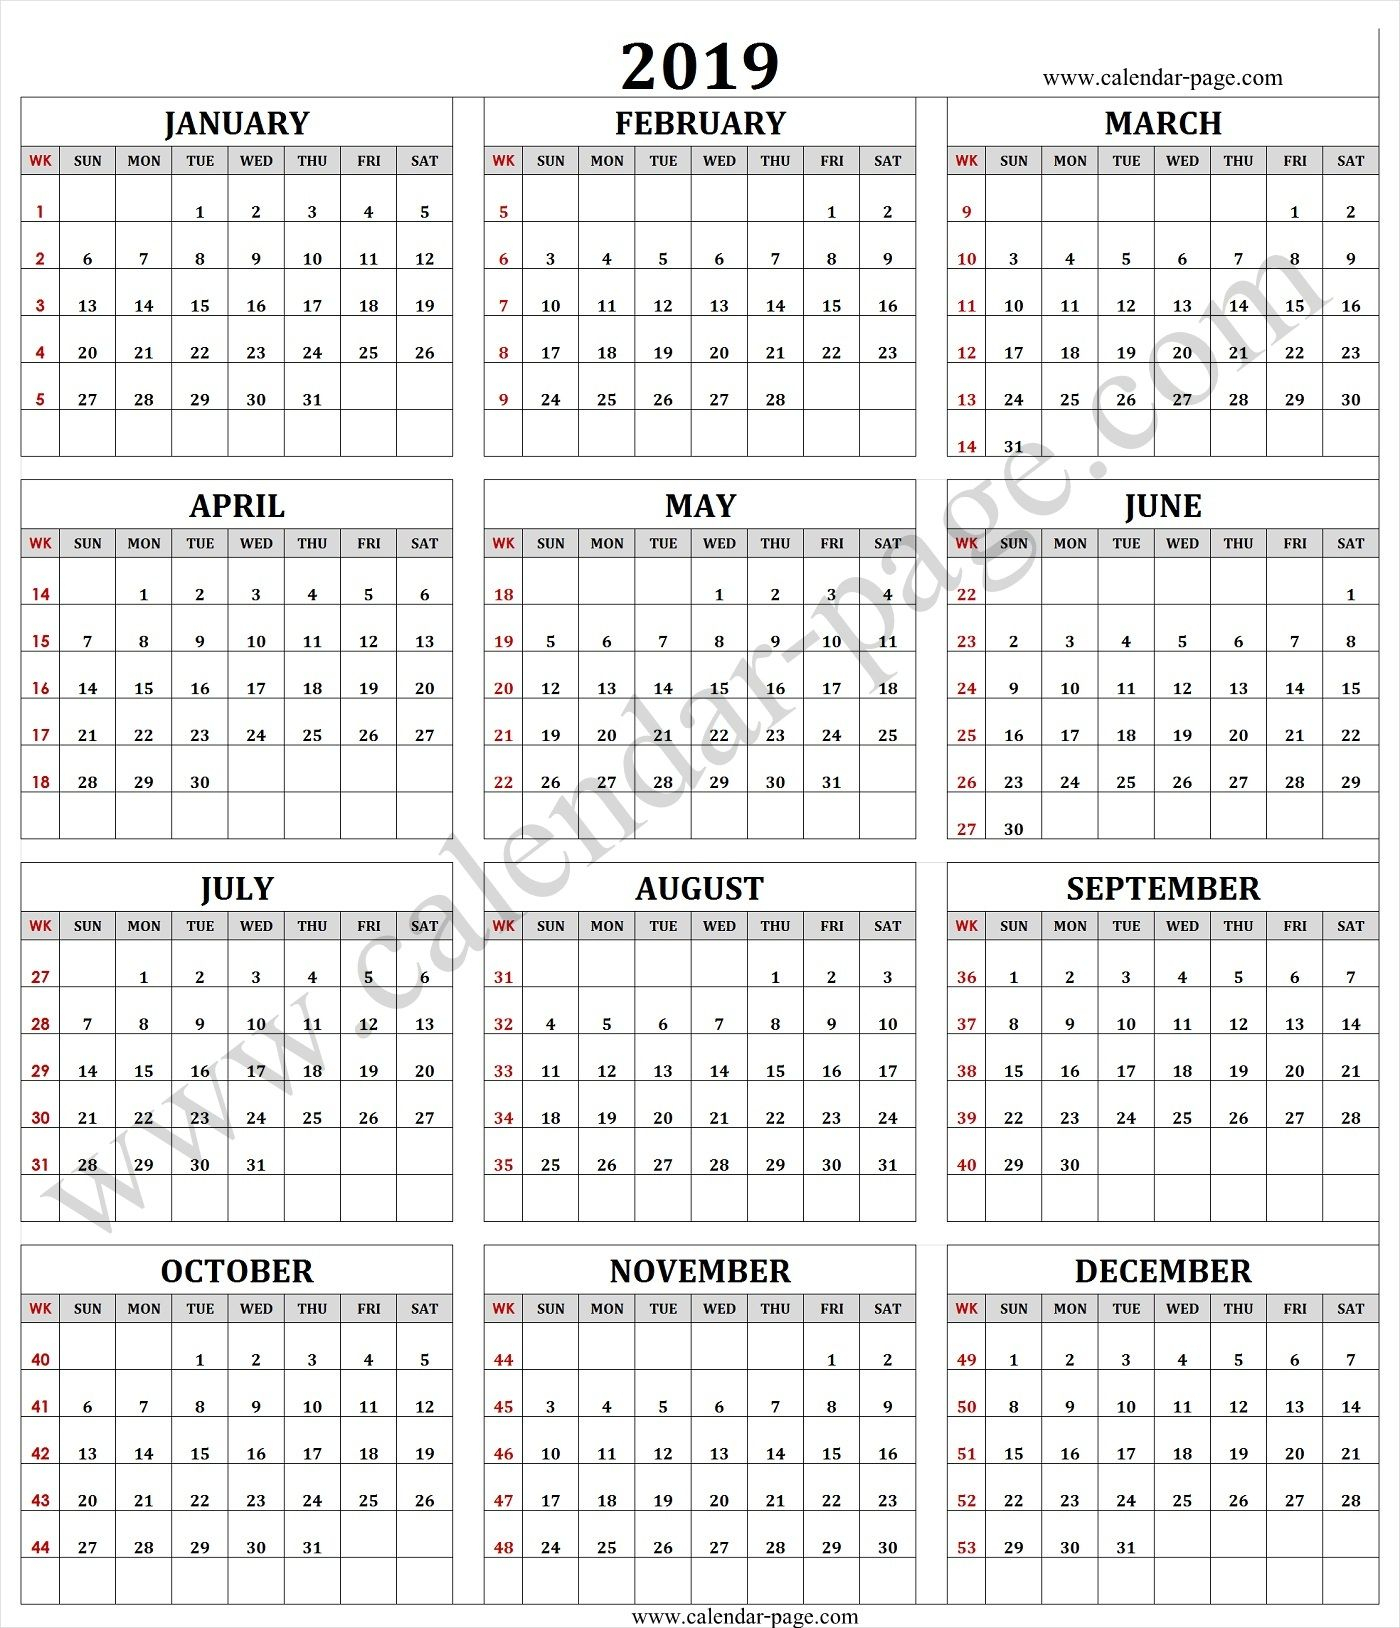 2019 Calendar With Week Numbers - Free Download Printable